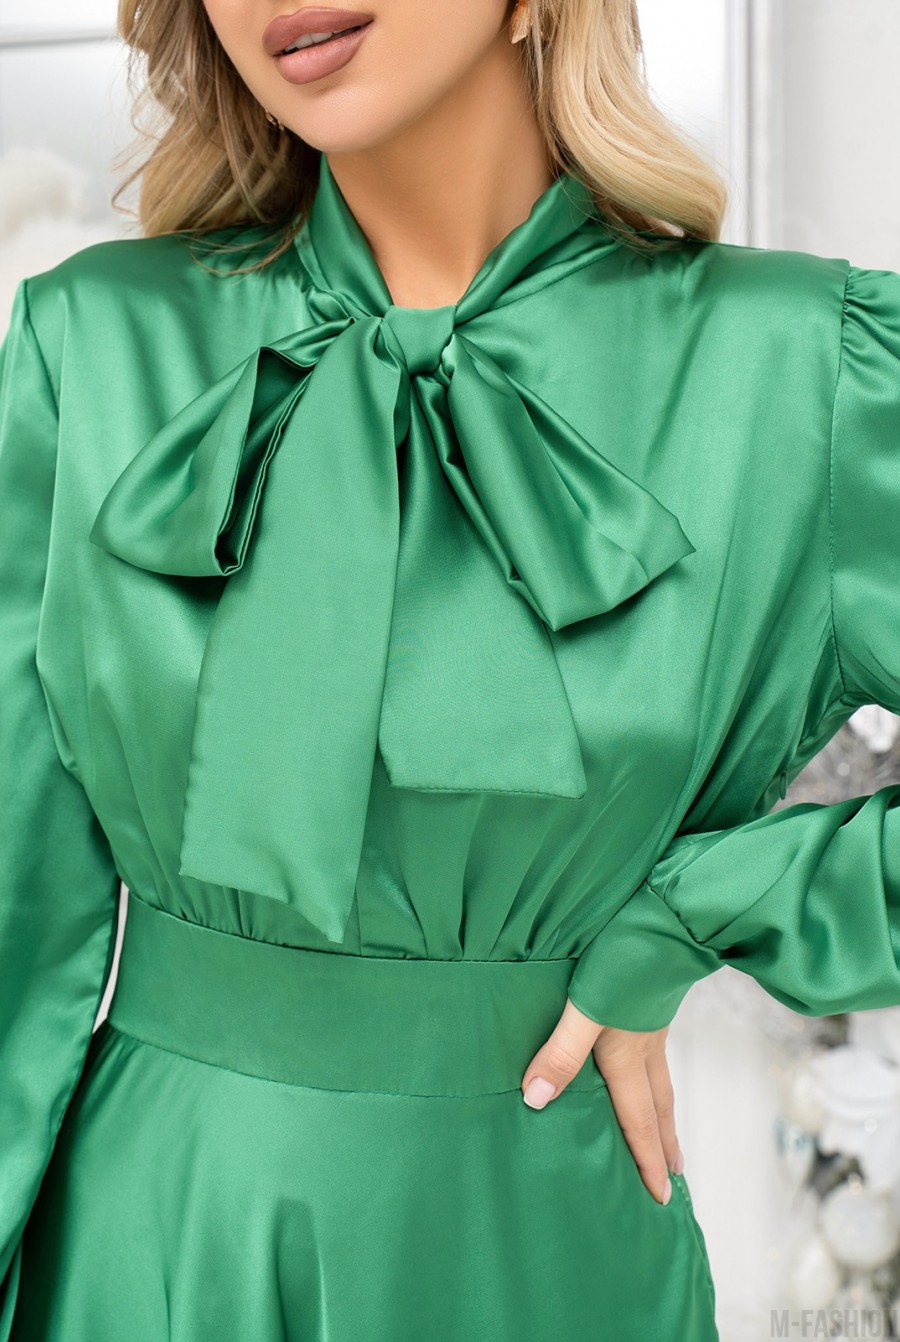 Зеленое шелковое платье с бантом - Фото 4